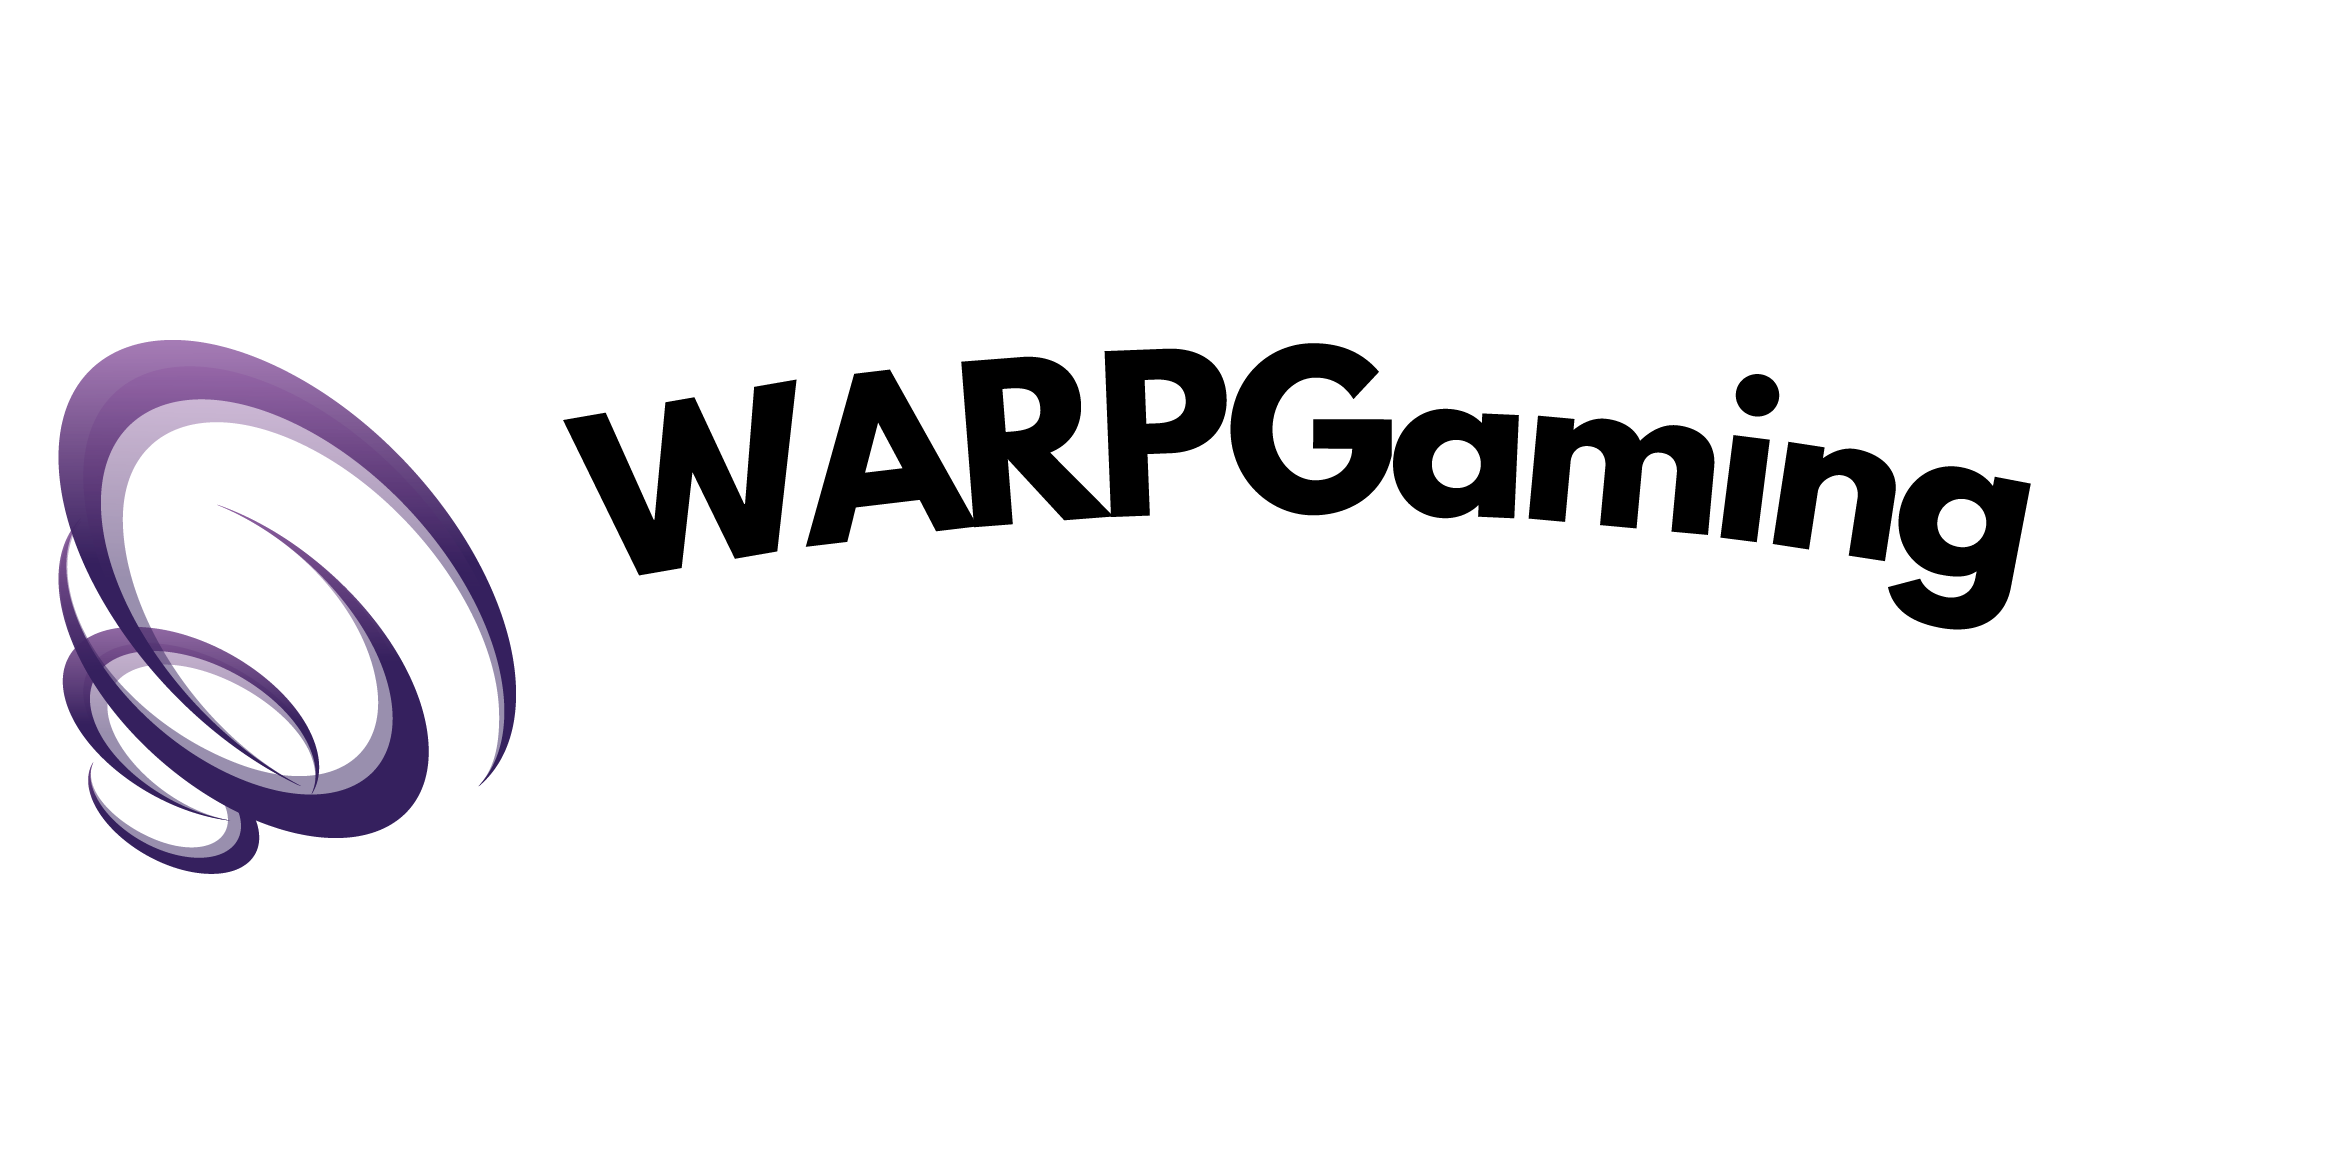 WARPgaming logo